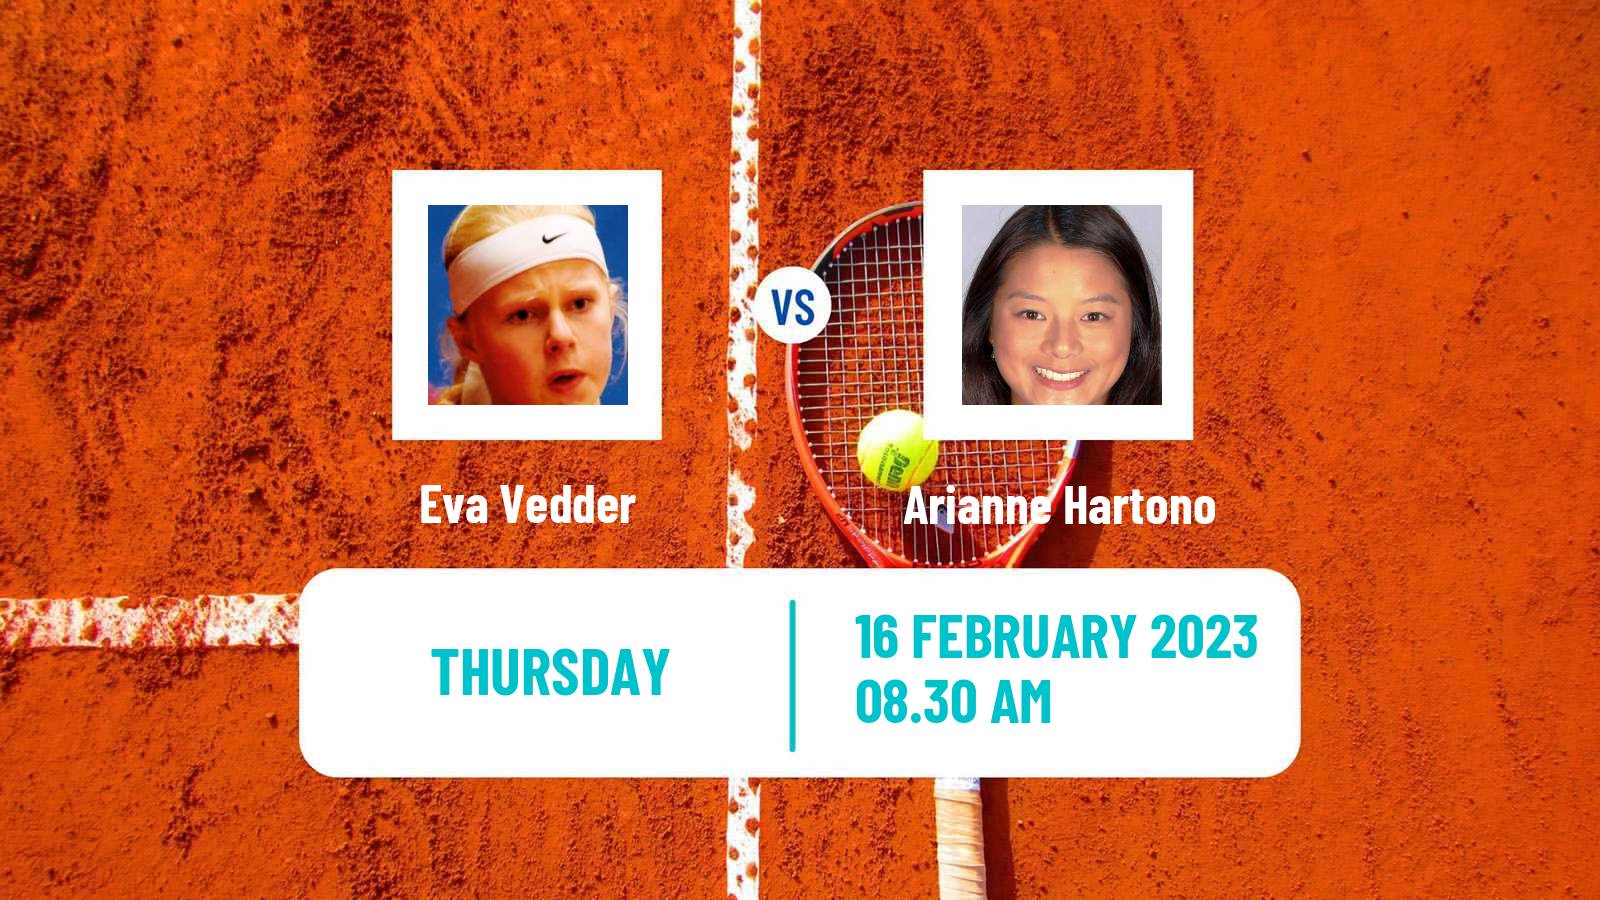 Tennis ITF Tournaments Eva Vedder - Arianne Hartono